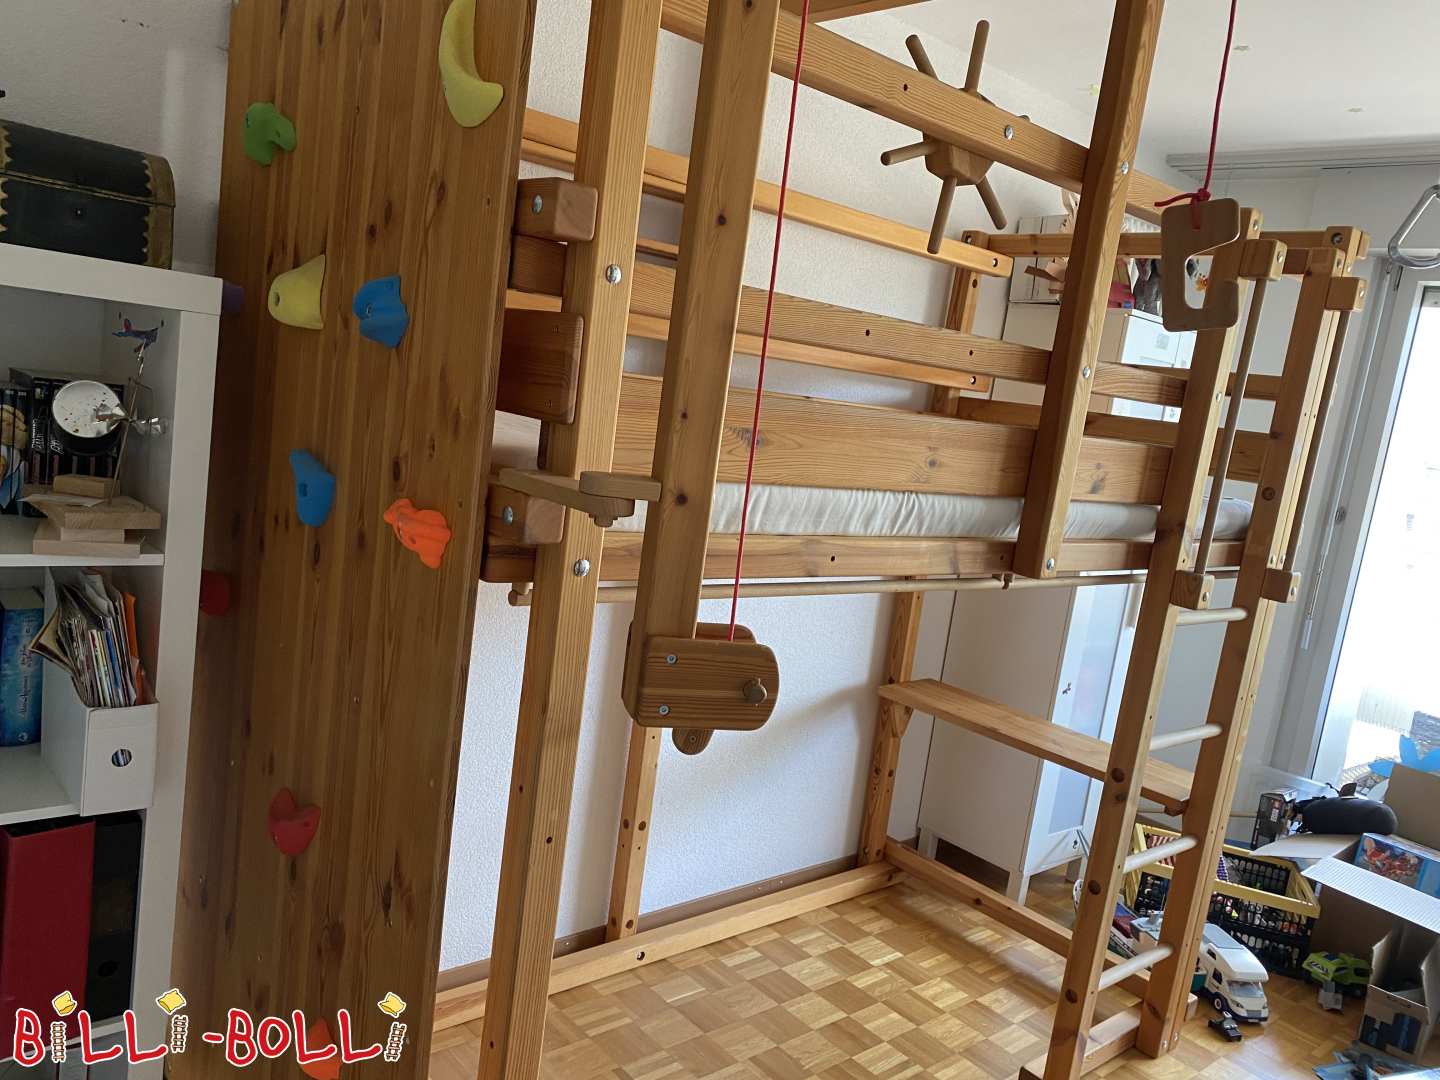 Gojenje podstrešne postelje z veliko dodatkov, naoljen bor (Category: Podstrešna postelja, ki raste z otrokom used)